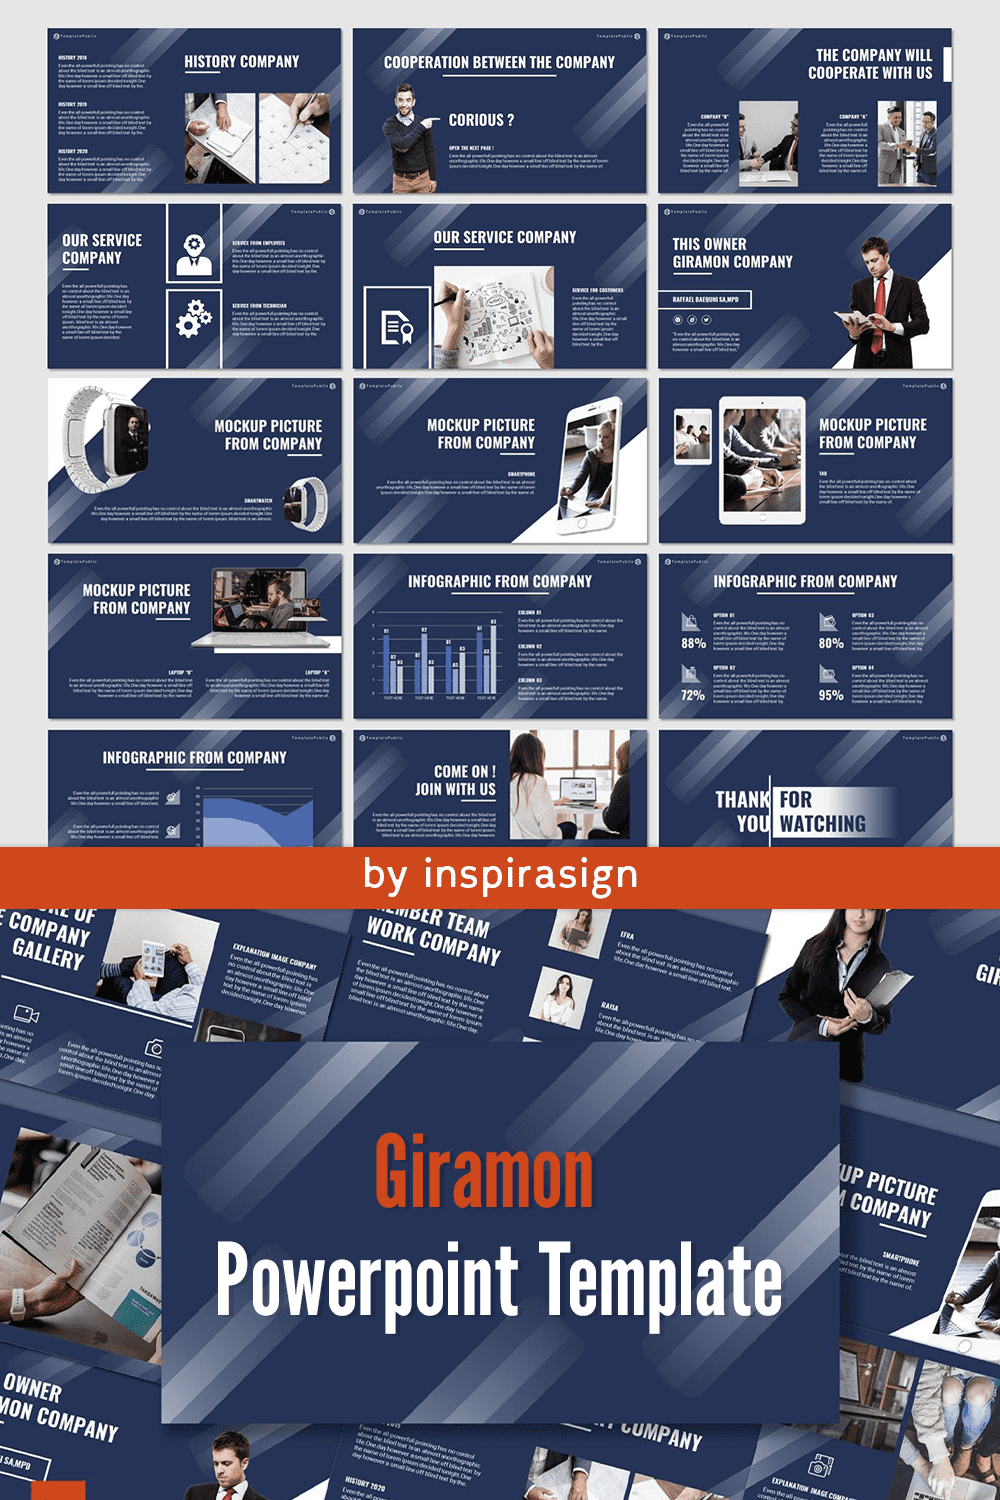 Giramon - PowerPoint Template pinterest image.